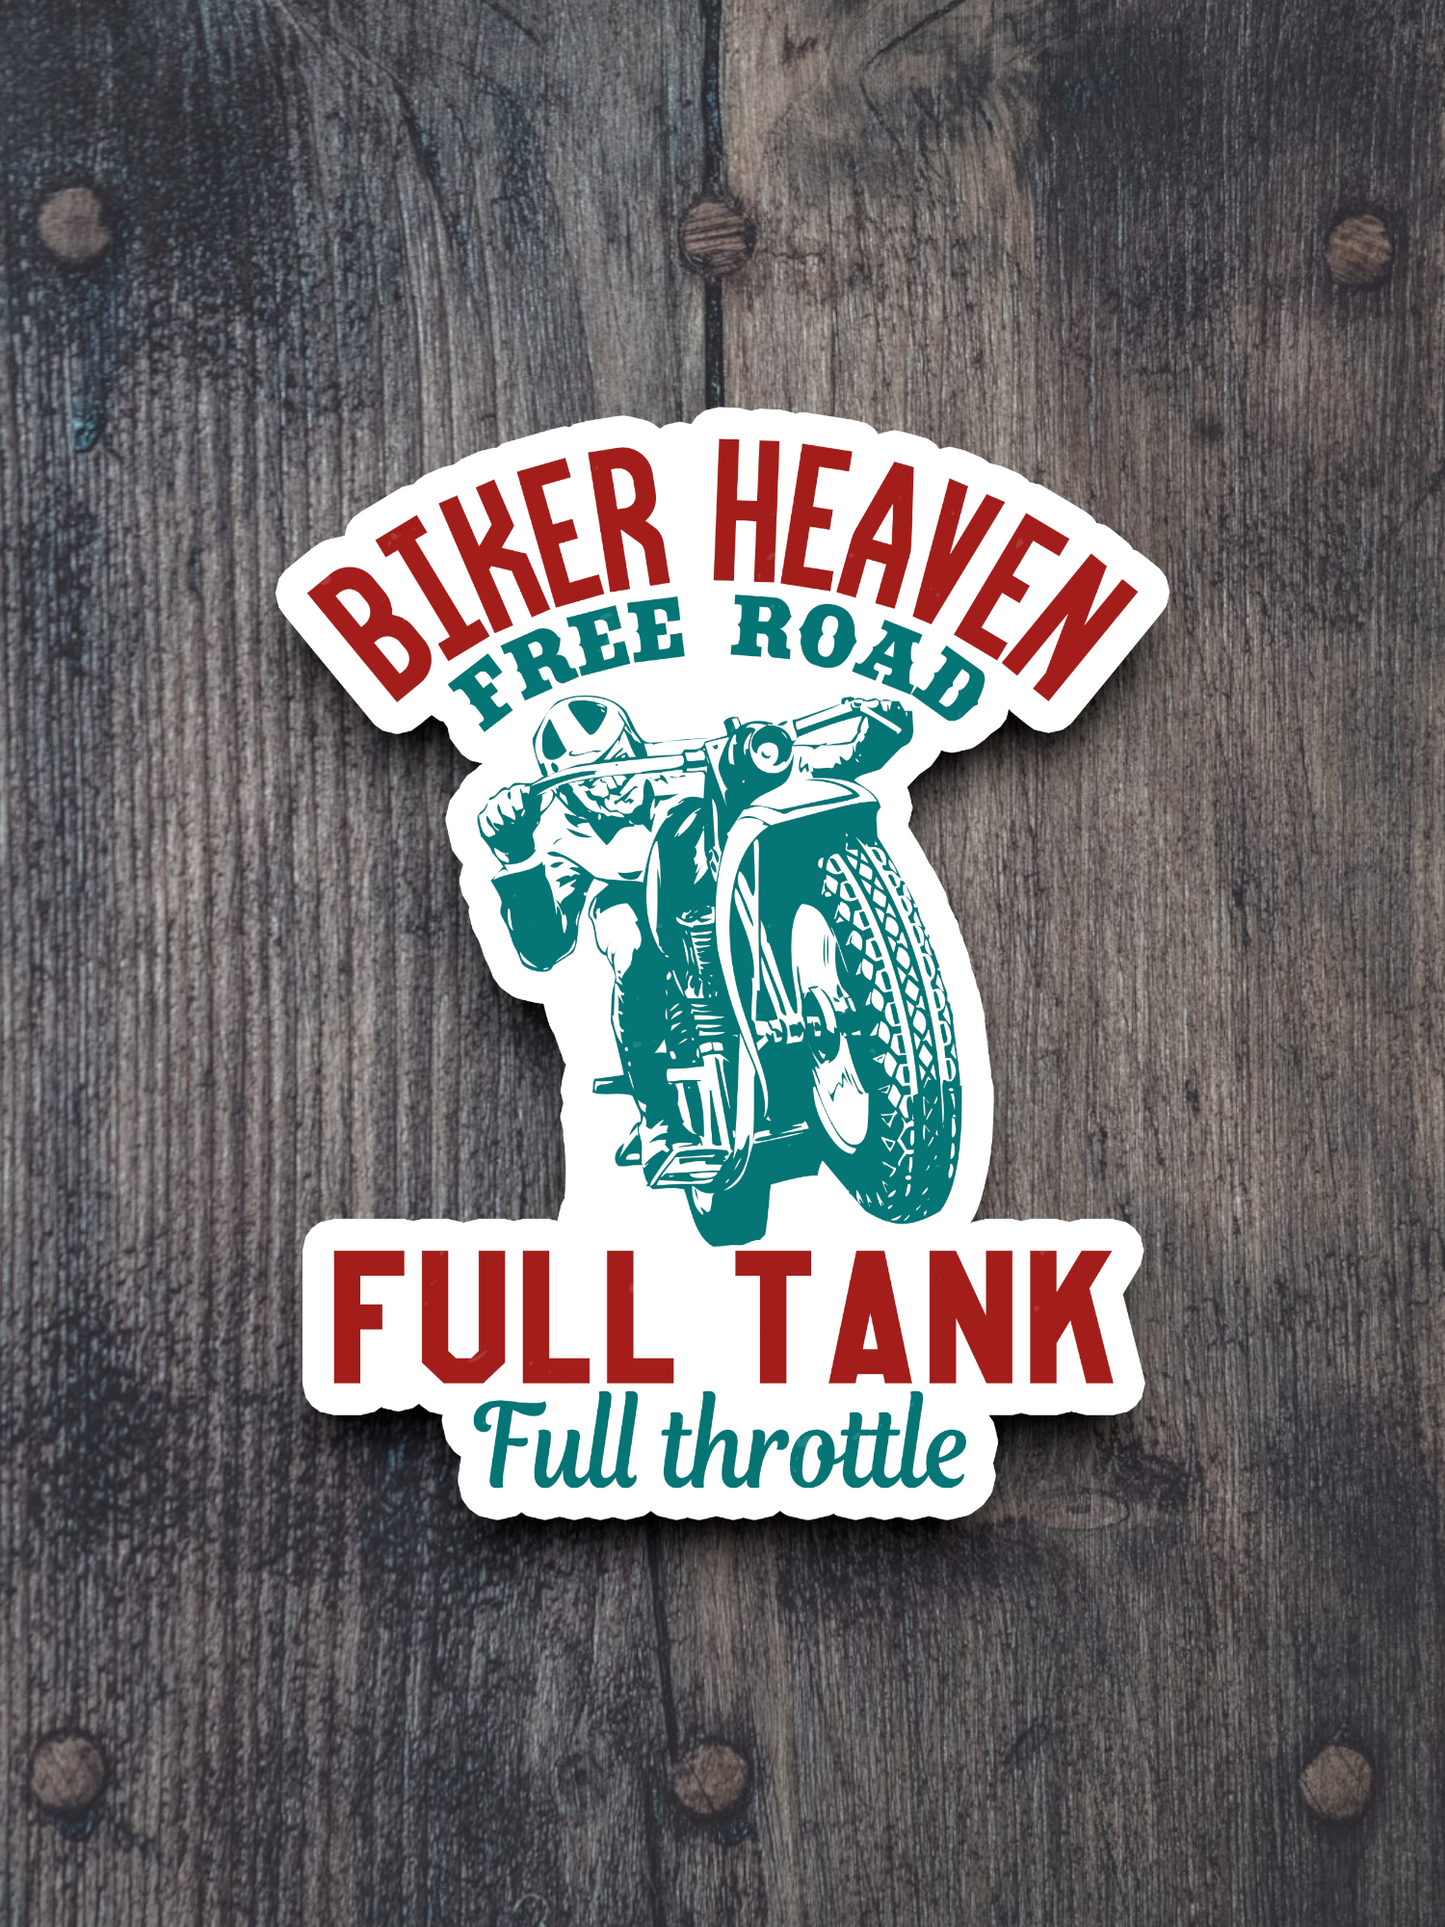 Biker Heaven Free Road Full Tank Full Throttle Sticker